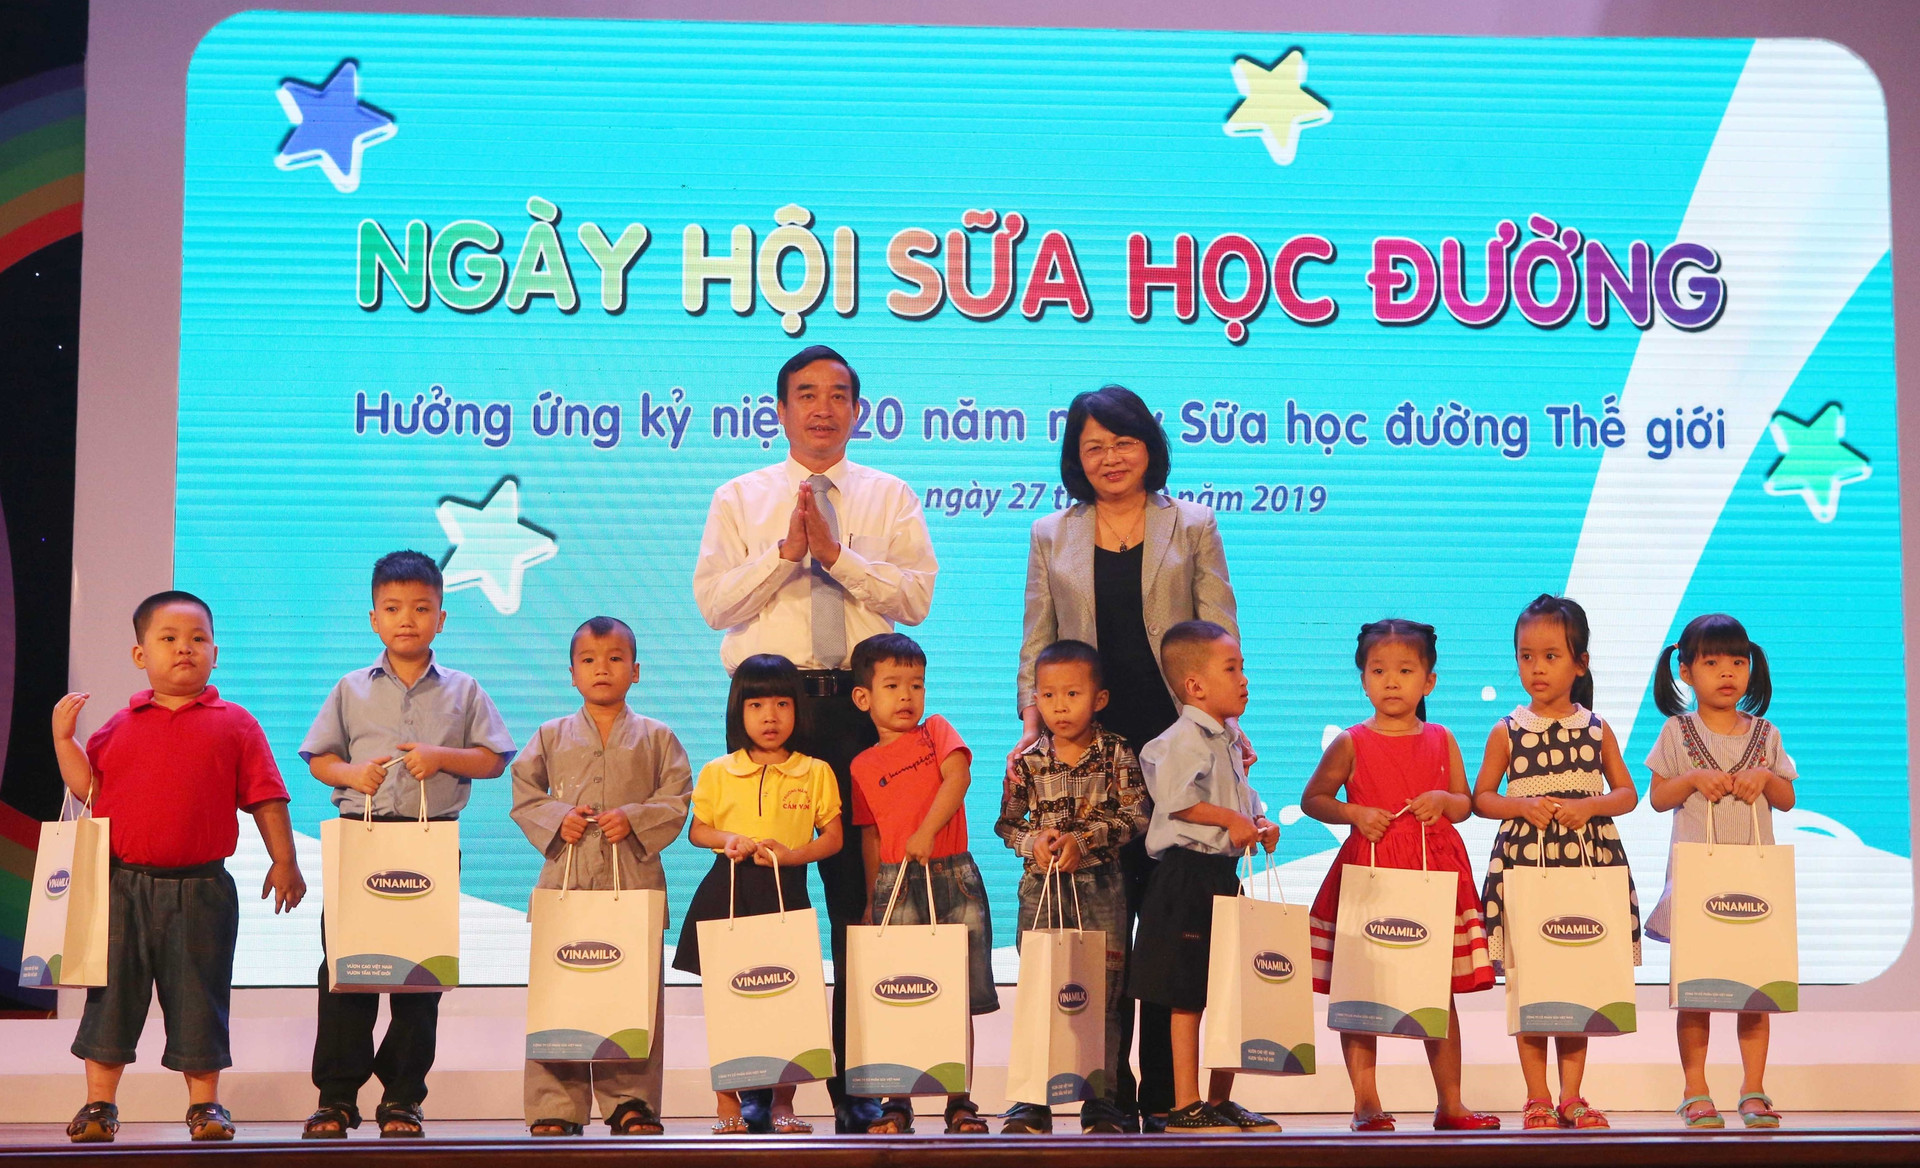 Tưng bưng ngày hội sữa học đường tại Đà Nẵng